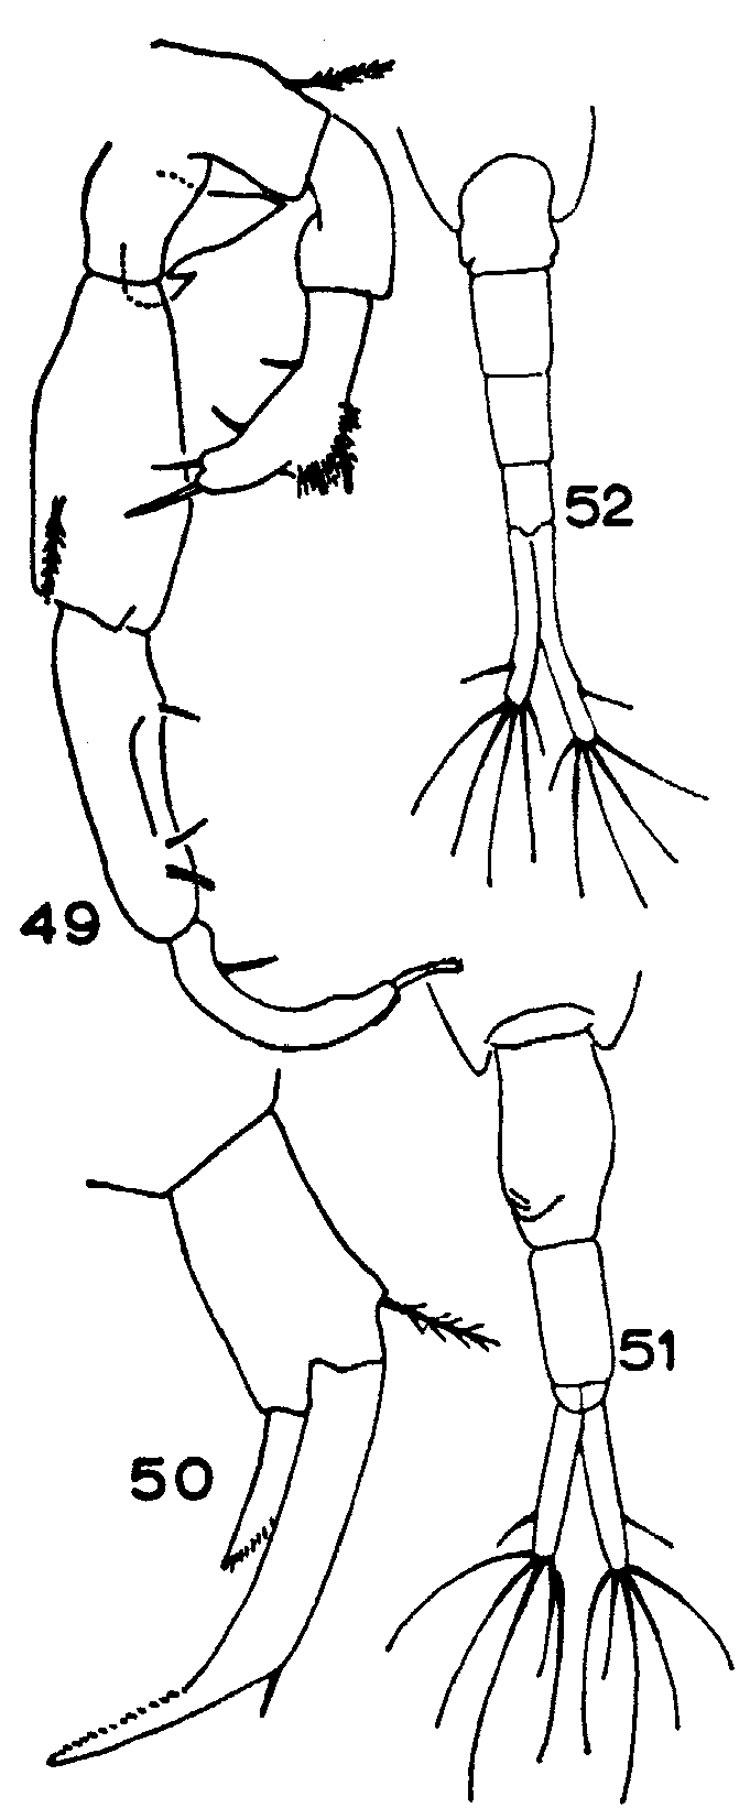 Espce Acartiella sewelli - Planche 1 de figures morphologiques